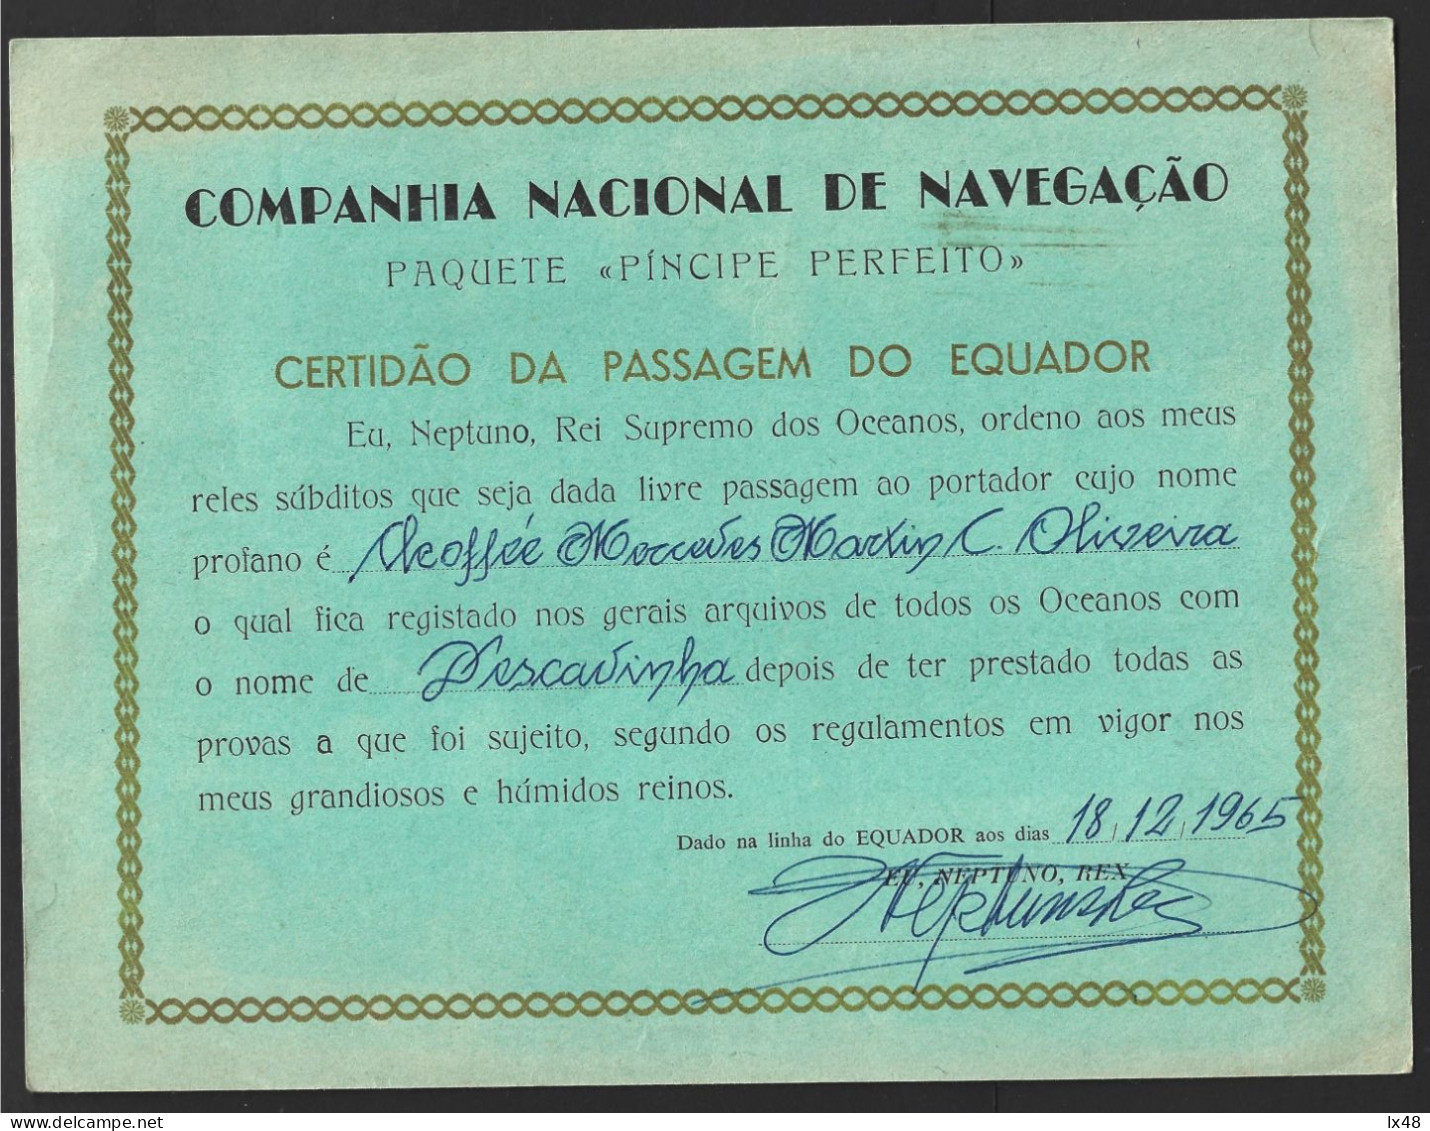 Ship 'Perfect Prince' Of CNN Companhia Nacional Navegação, Portugal. Certificate Of Crossing The 'Equator' Line In 1965. - Transporte